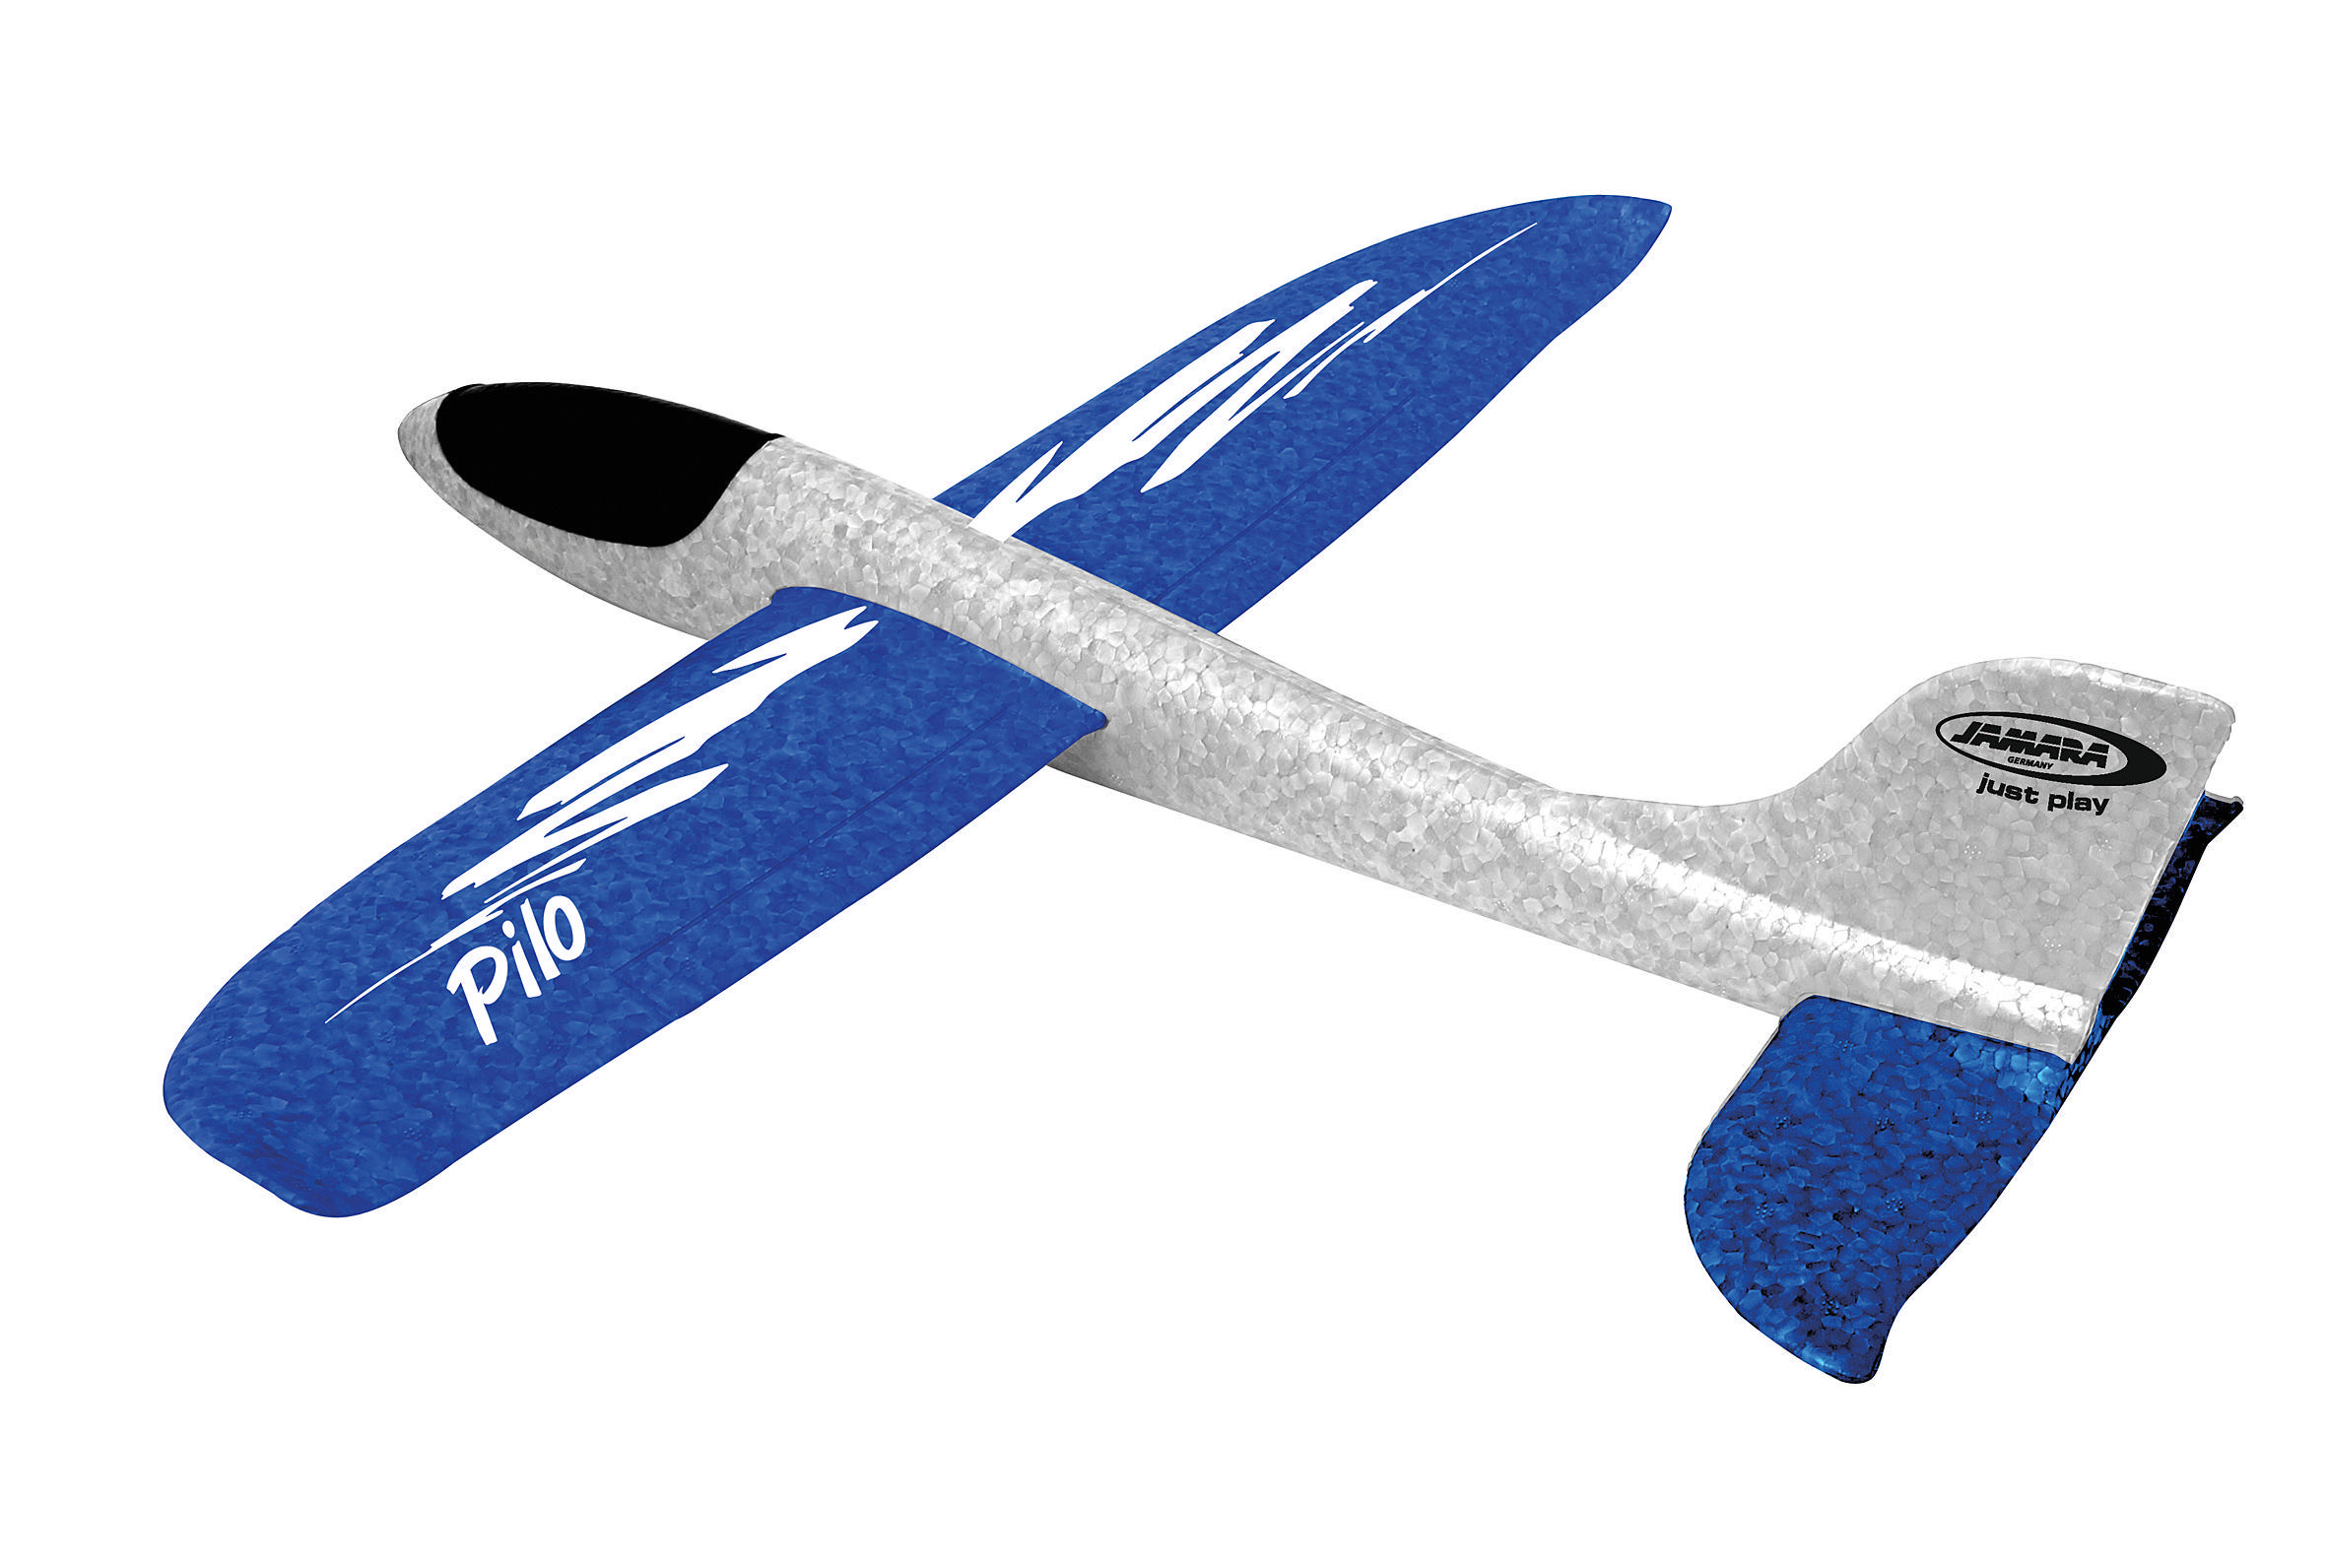 KIDS Schaumwurfgleiter Pilo Weiß/Blau JAMARA Spielzeugflugzeug